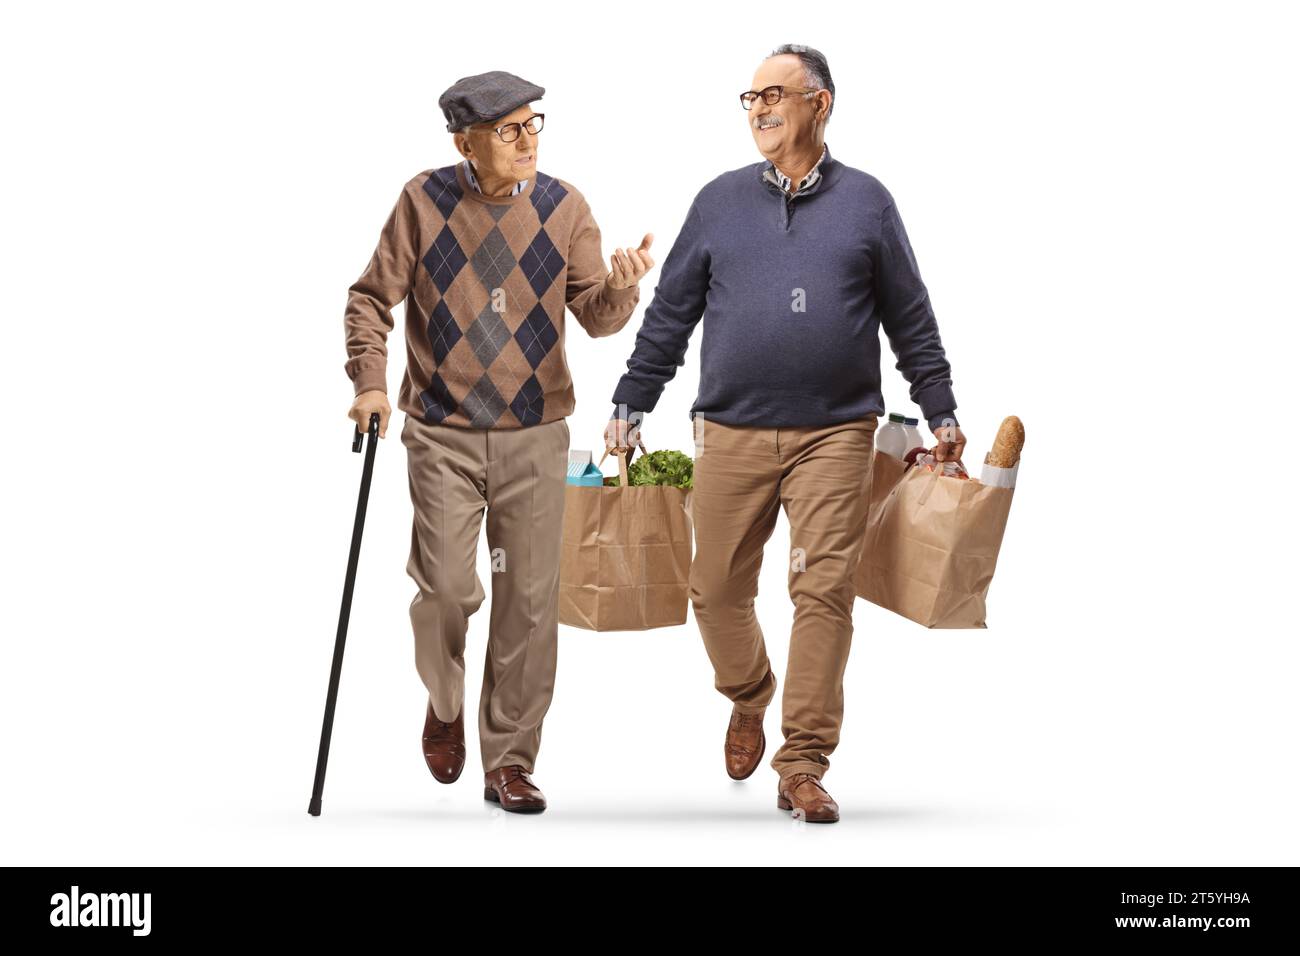 Homme âgé avec une canne marchant et parlant à un homme avec des sacs d'épicerie isolé sur fond blanc Banque D'Images